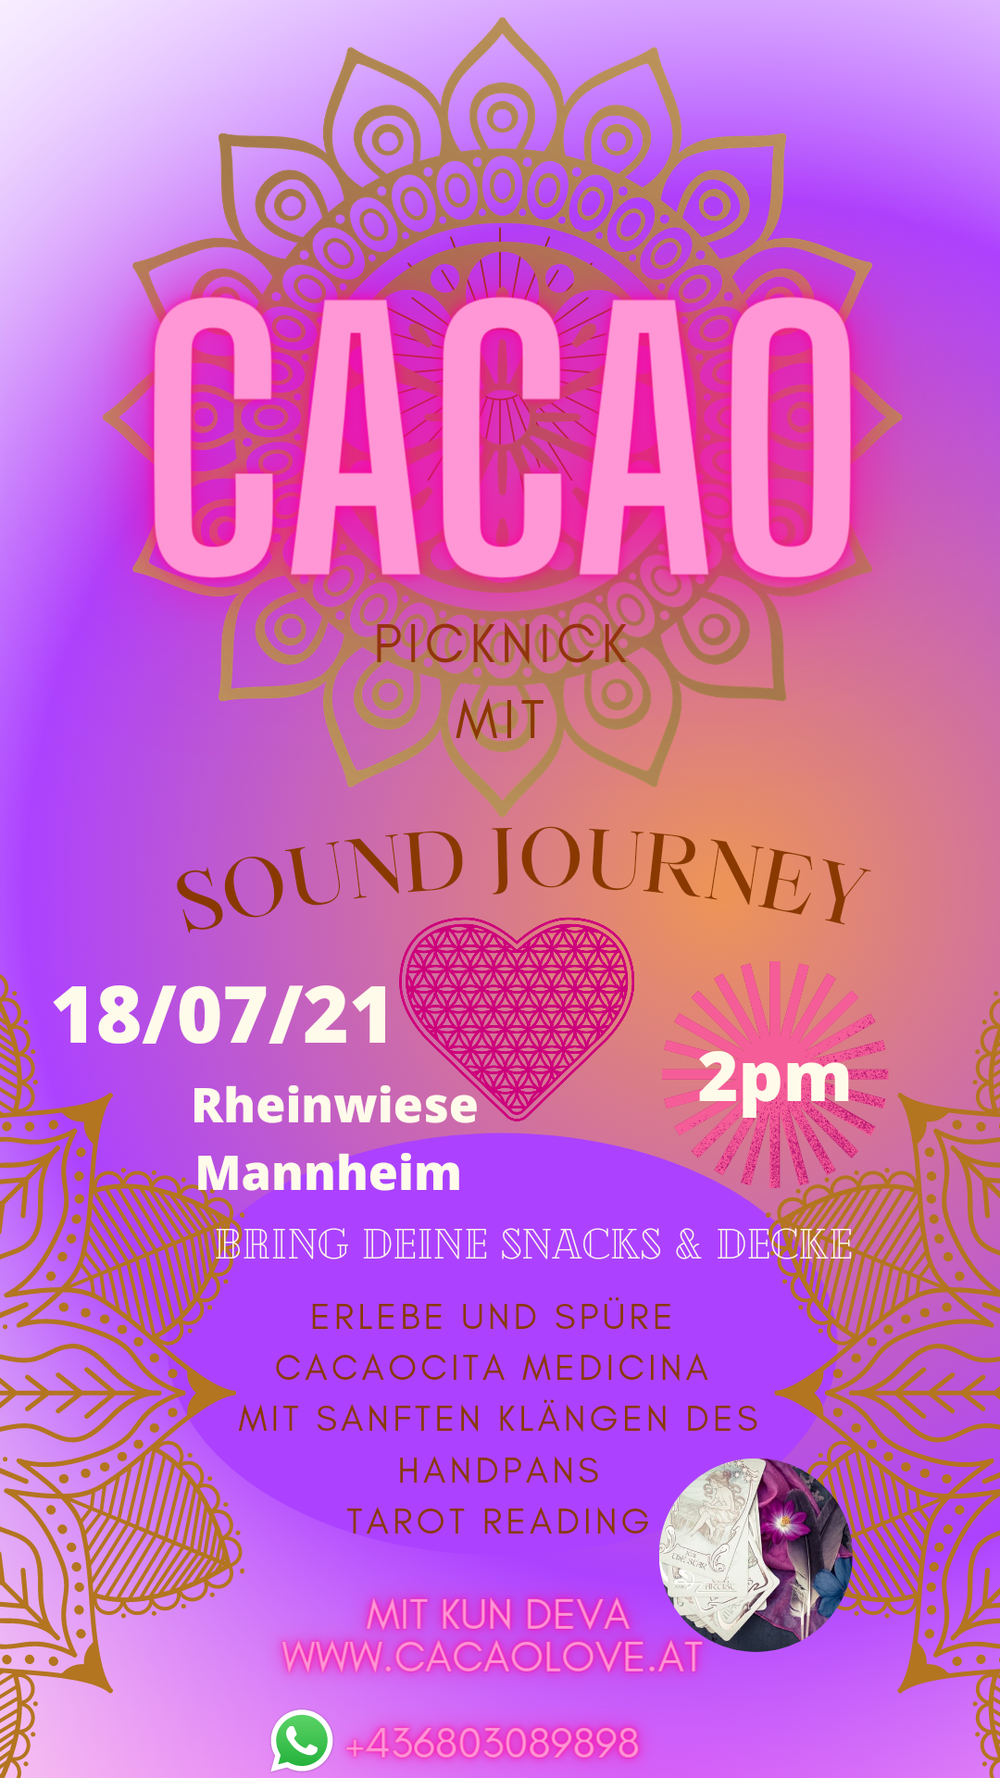 Cacao Picknick mit Sound journey 